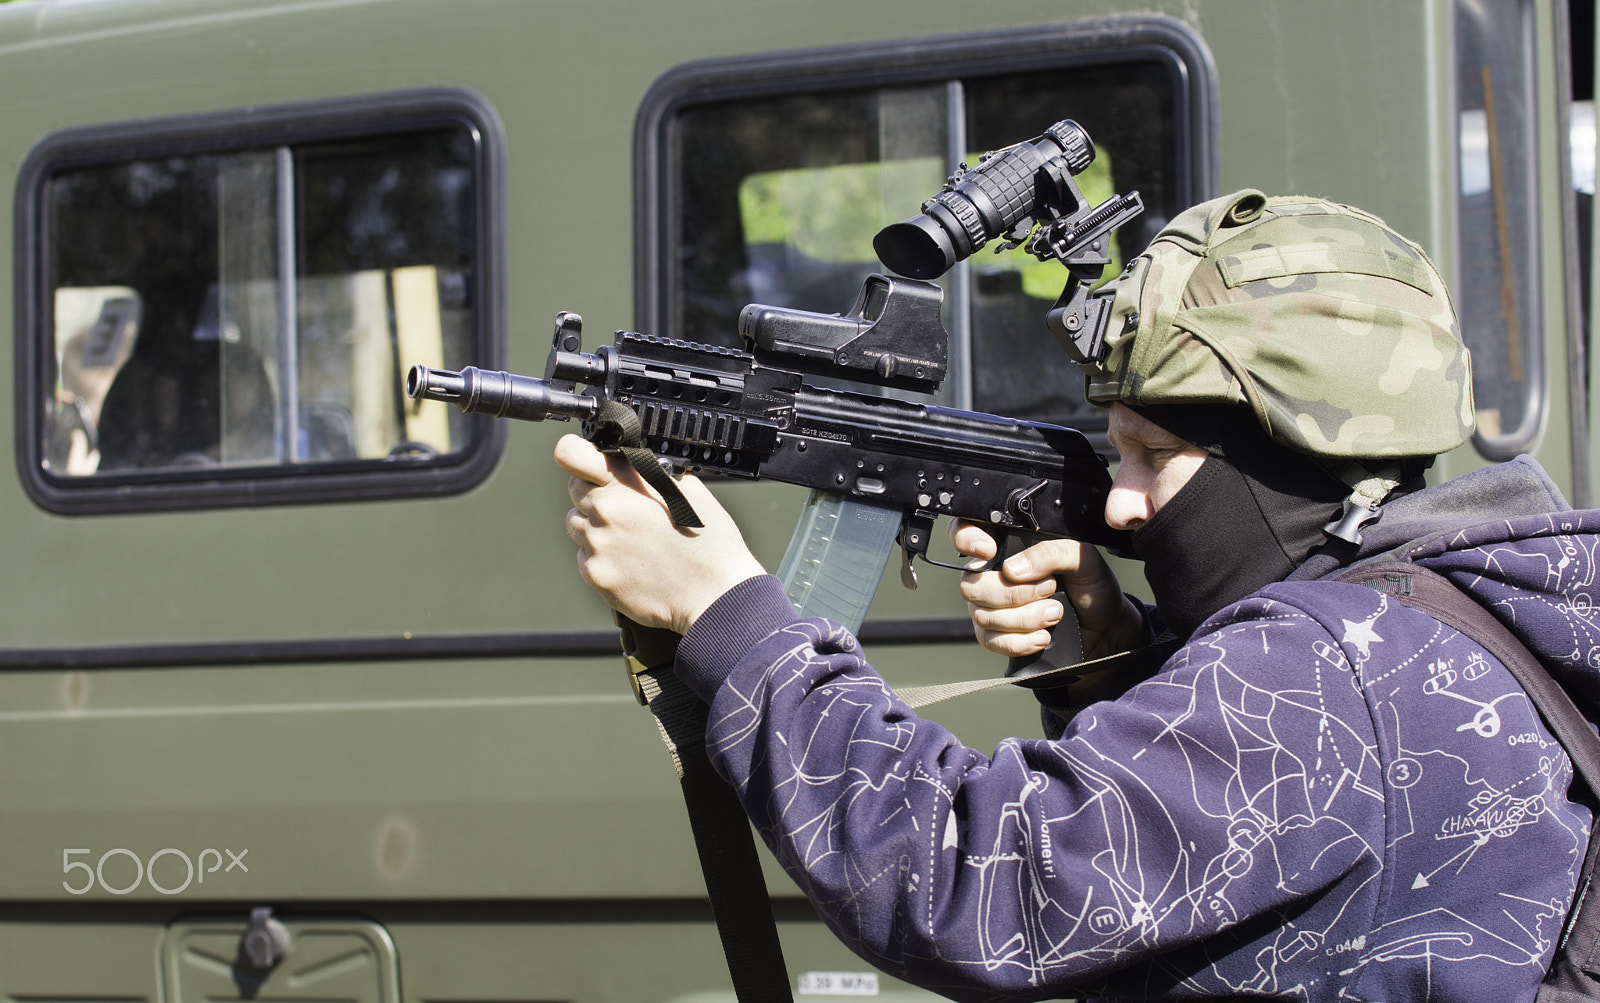 Nikon D7200 + Nikon AF-S Nikkor 70-200mm F4G ED VR sample photo. Special forces soldier in action photography